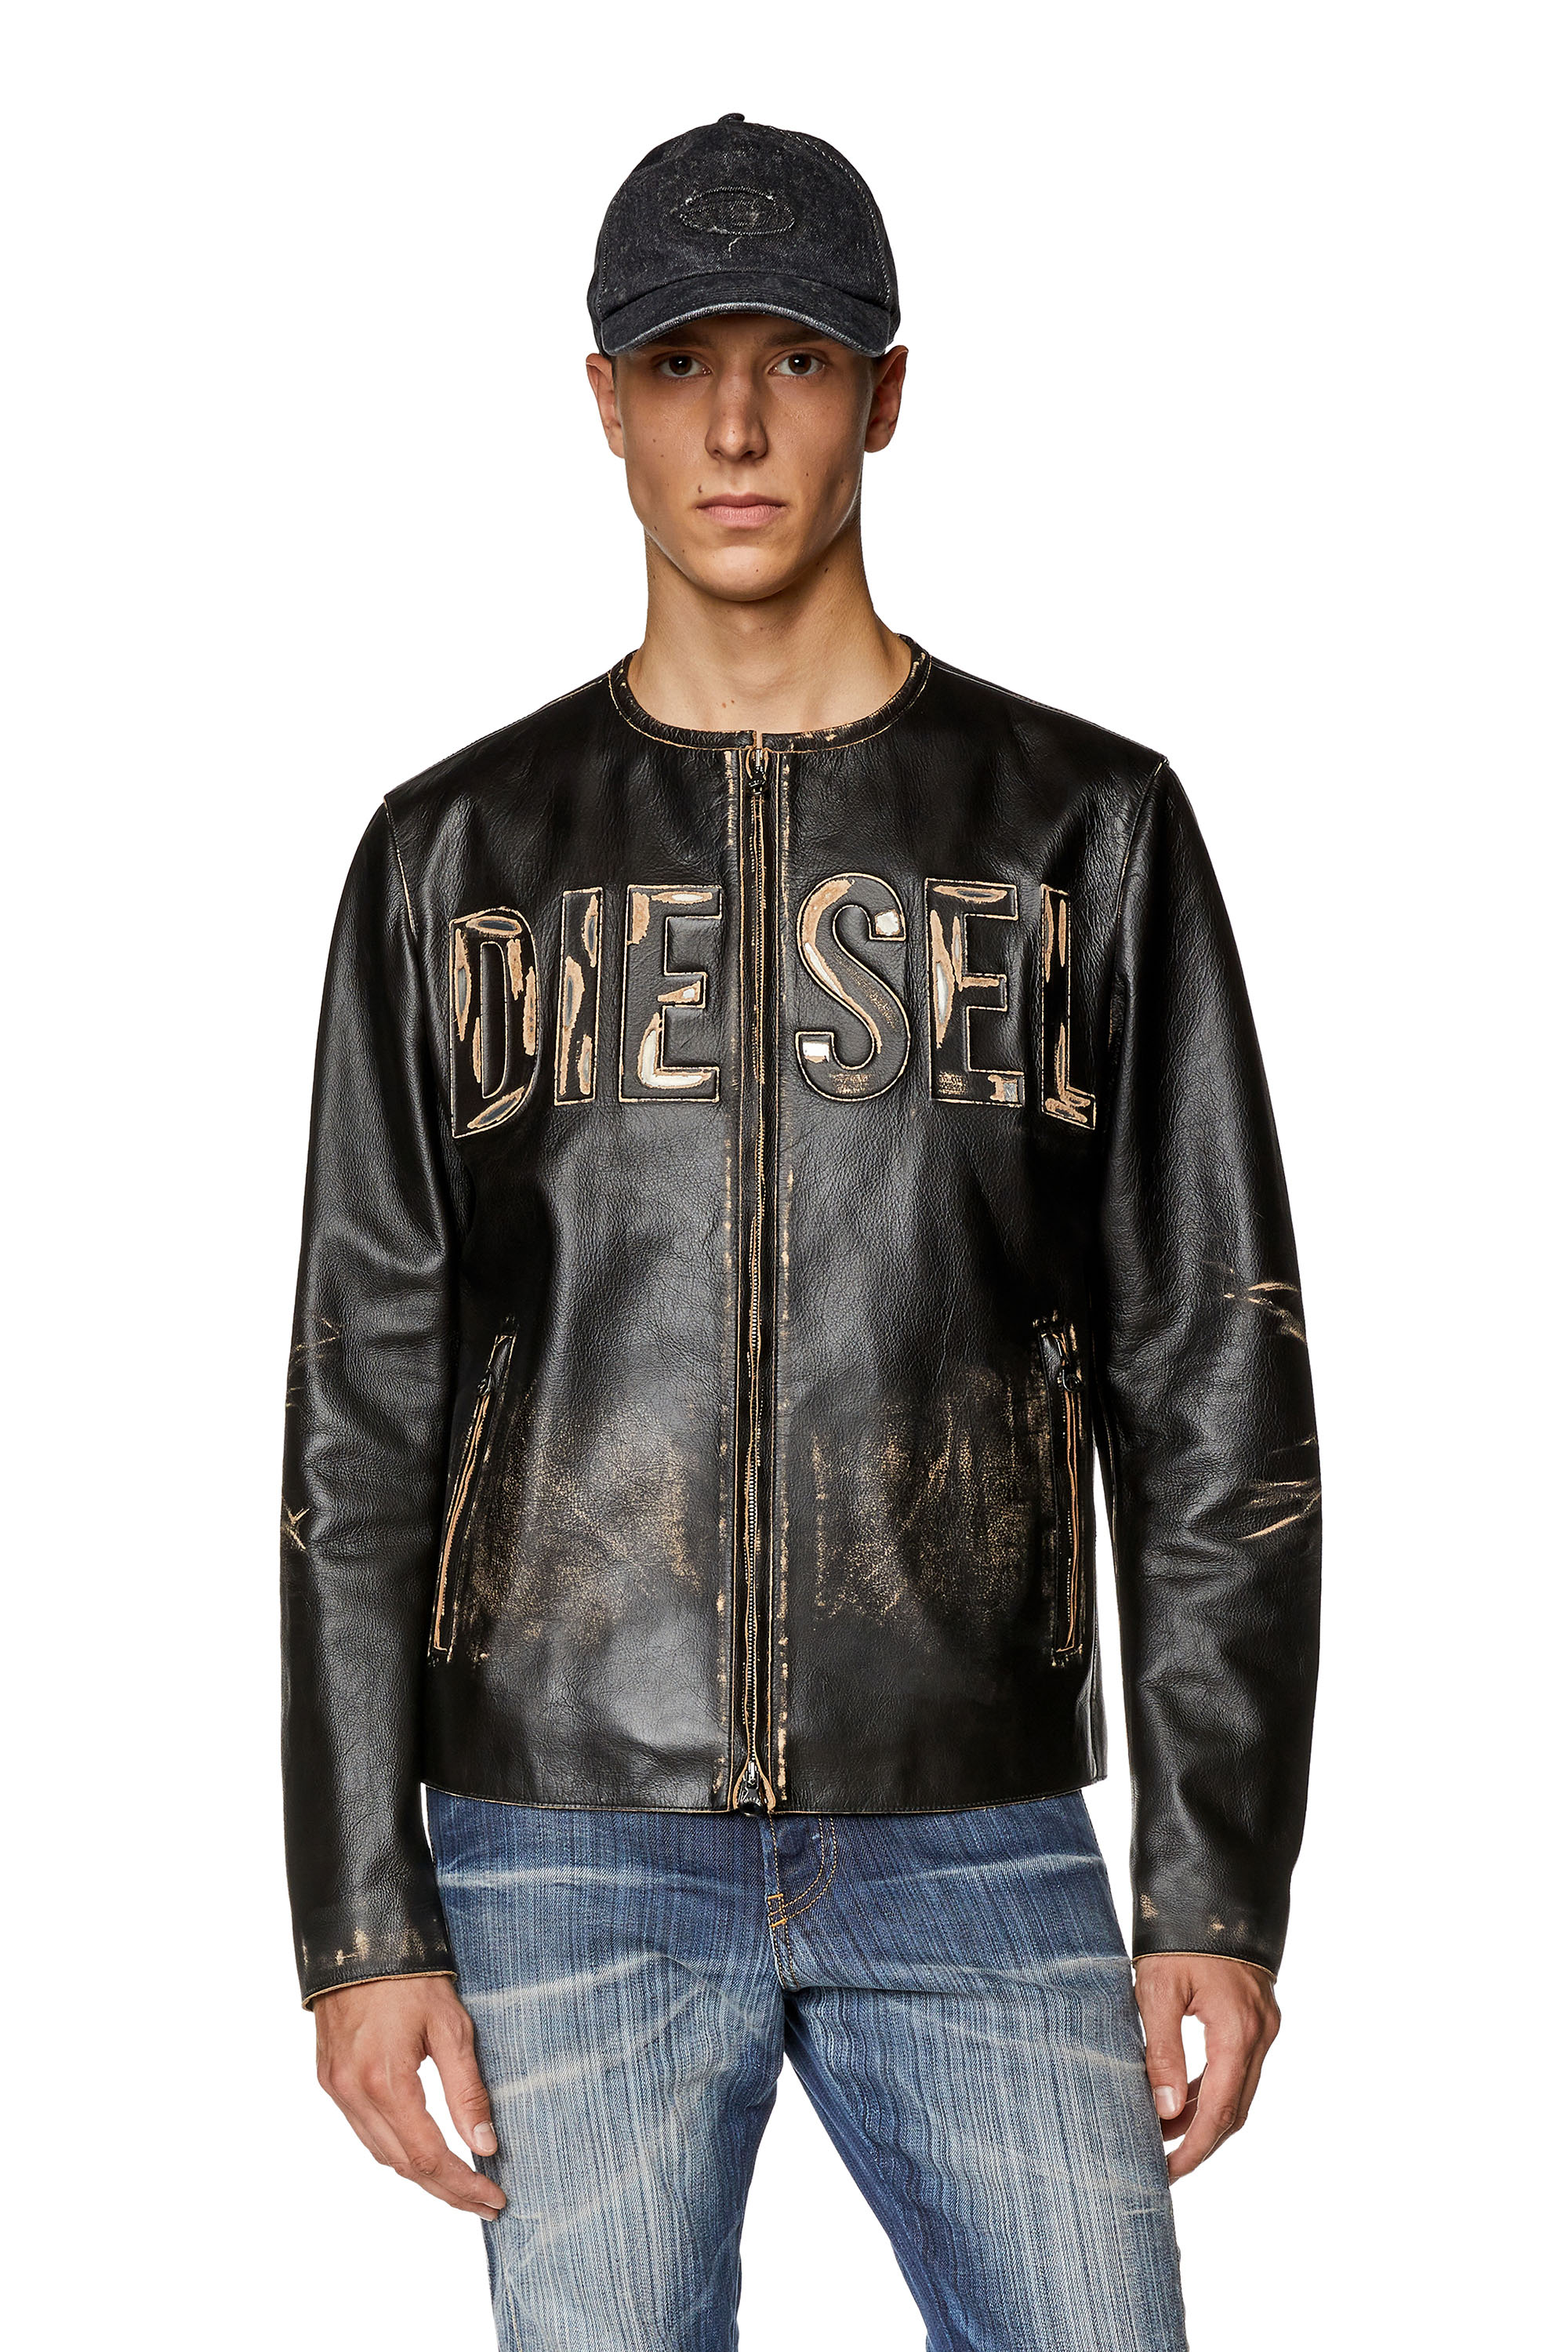 Diesel - Jacke aus vielgetragenem Leder mit Logo aus Metall - Lederjacken - Herren - Schwarz